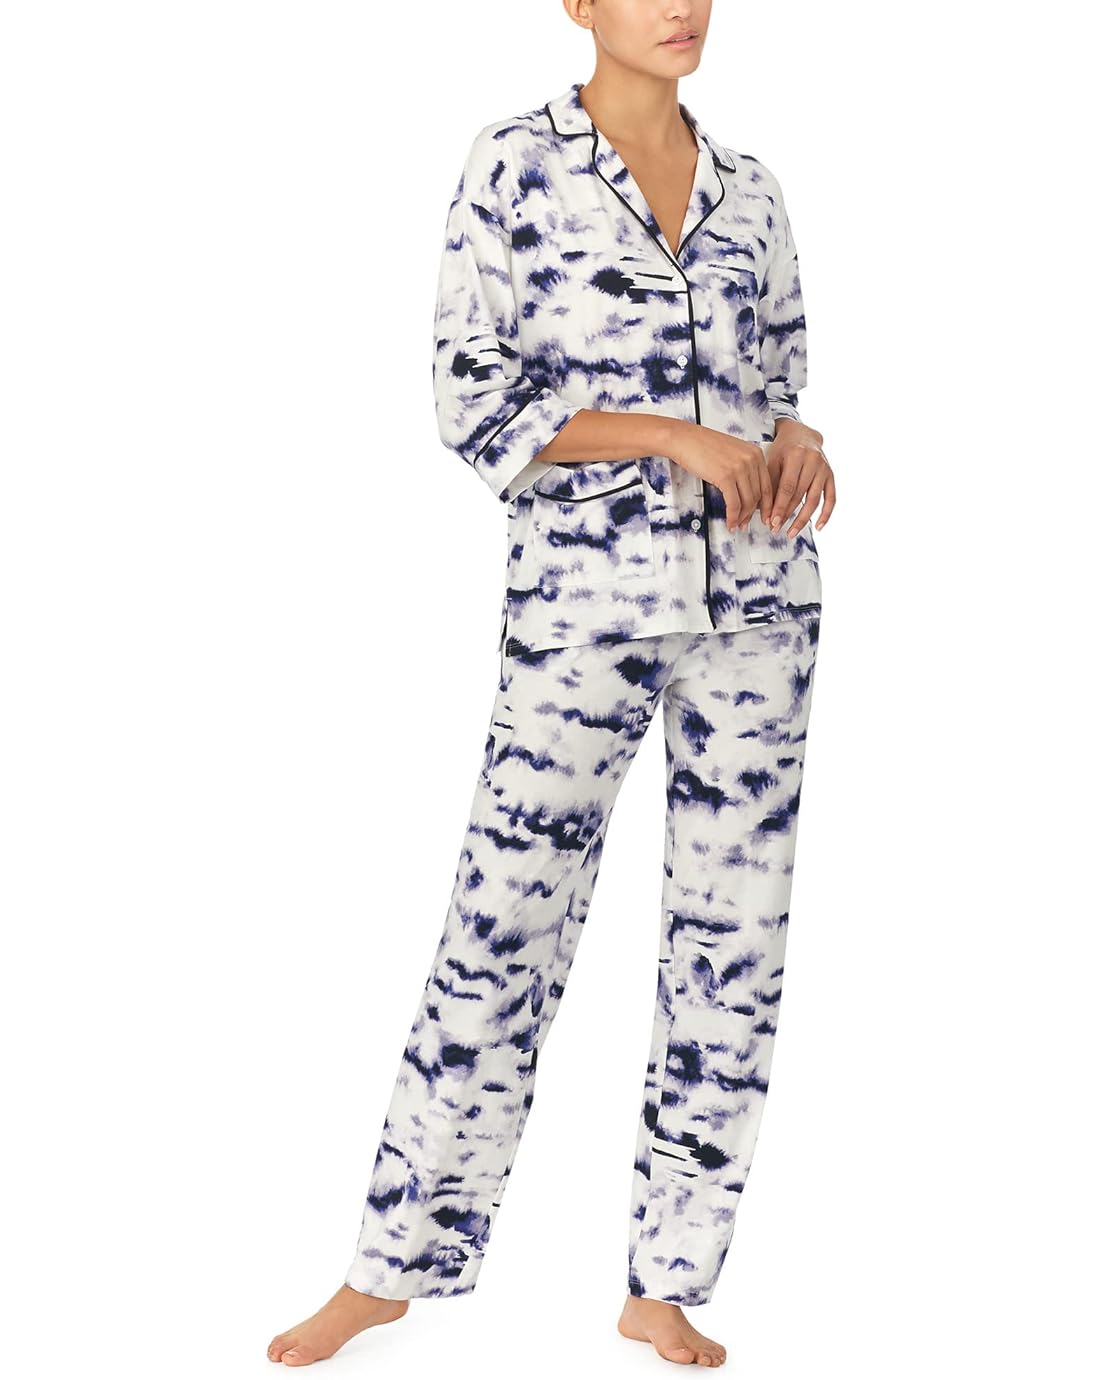 Donna Karan 3u002F4 Sleeve Pajama Set